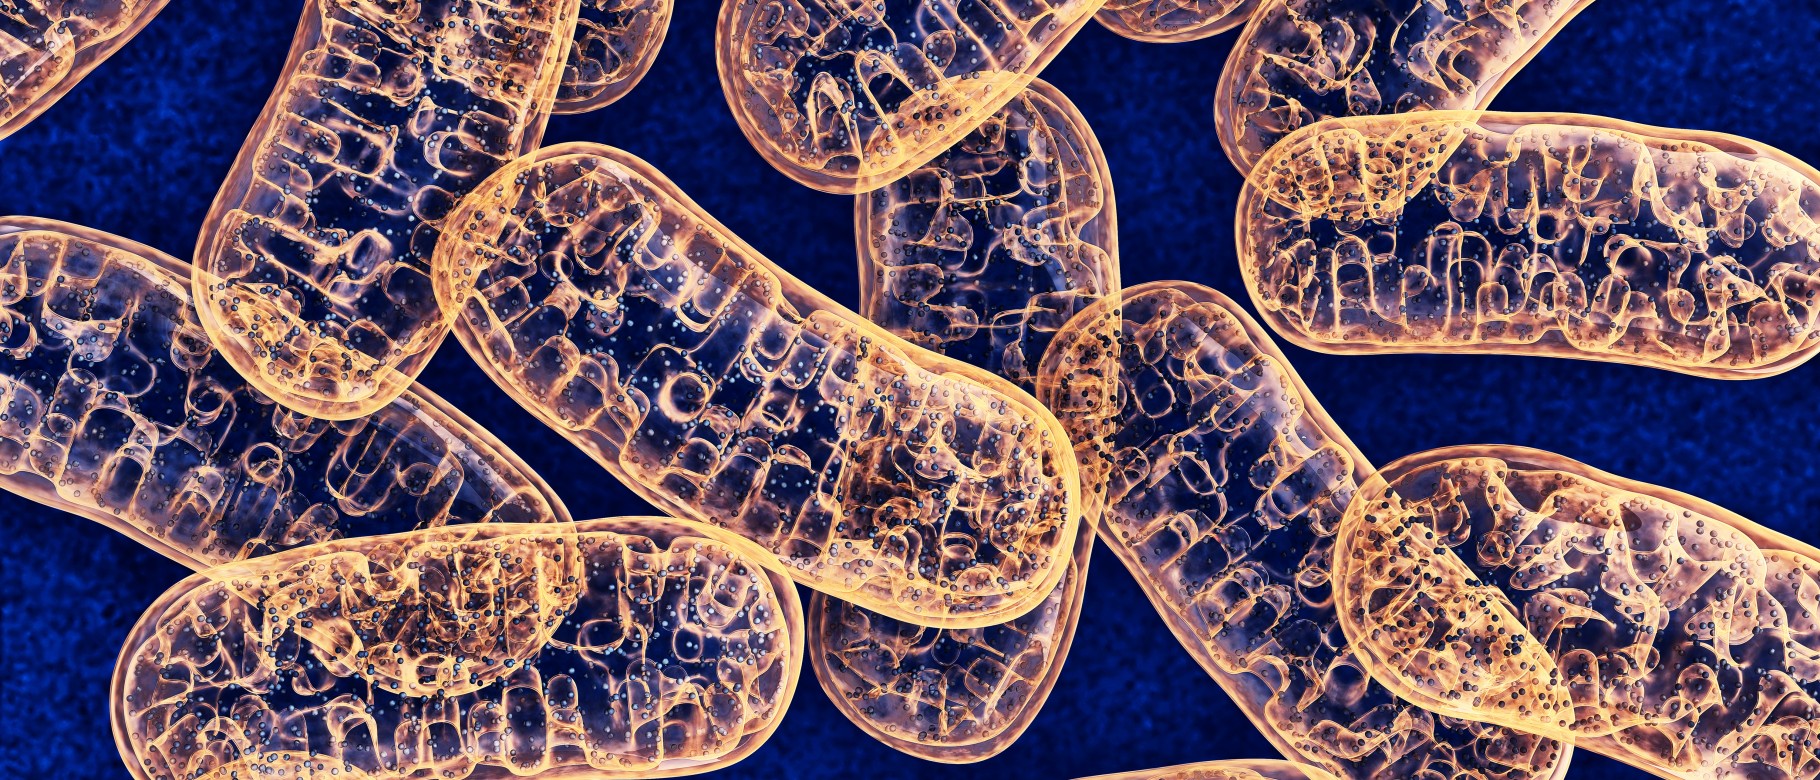 Cellular mitochondria as seen through an electron microscope